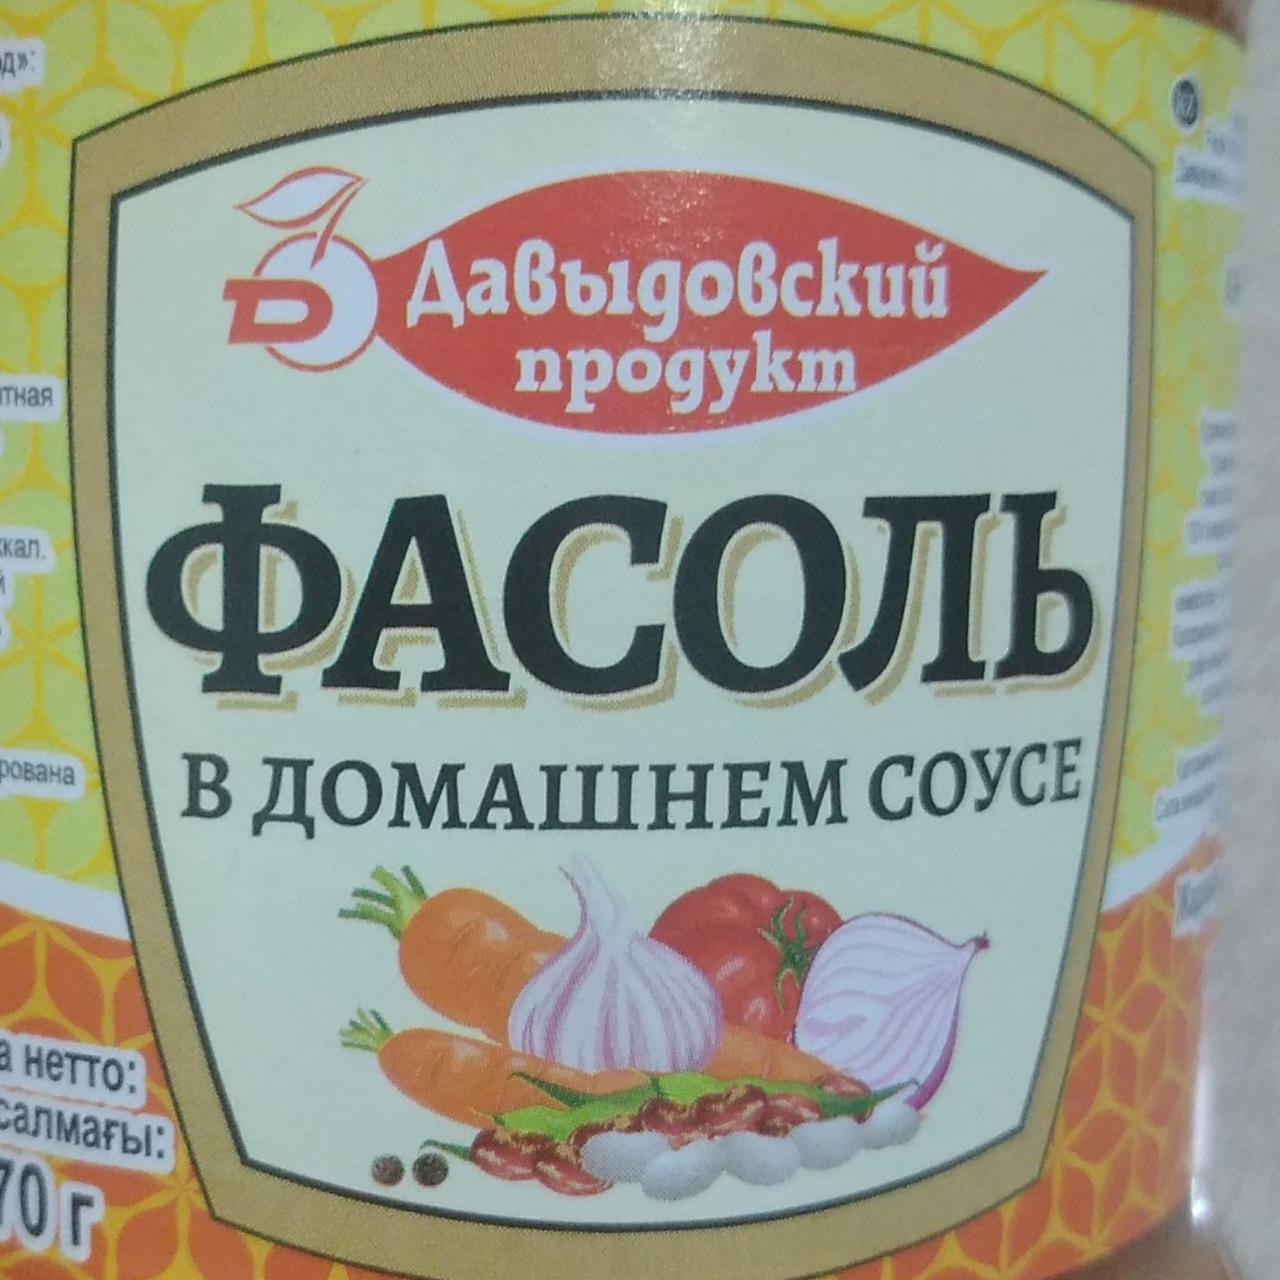 Фото - Фасоль в домашнем соусе Давыдовский продукт